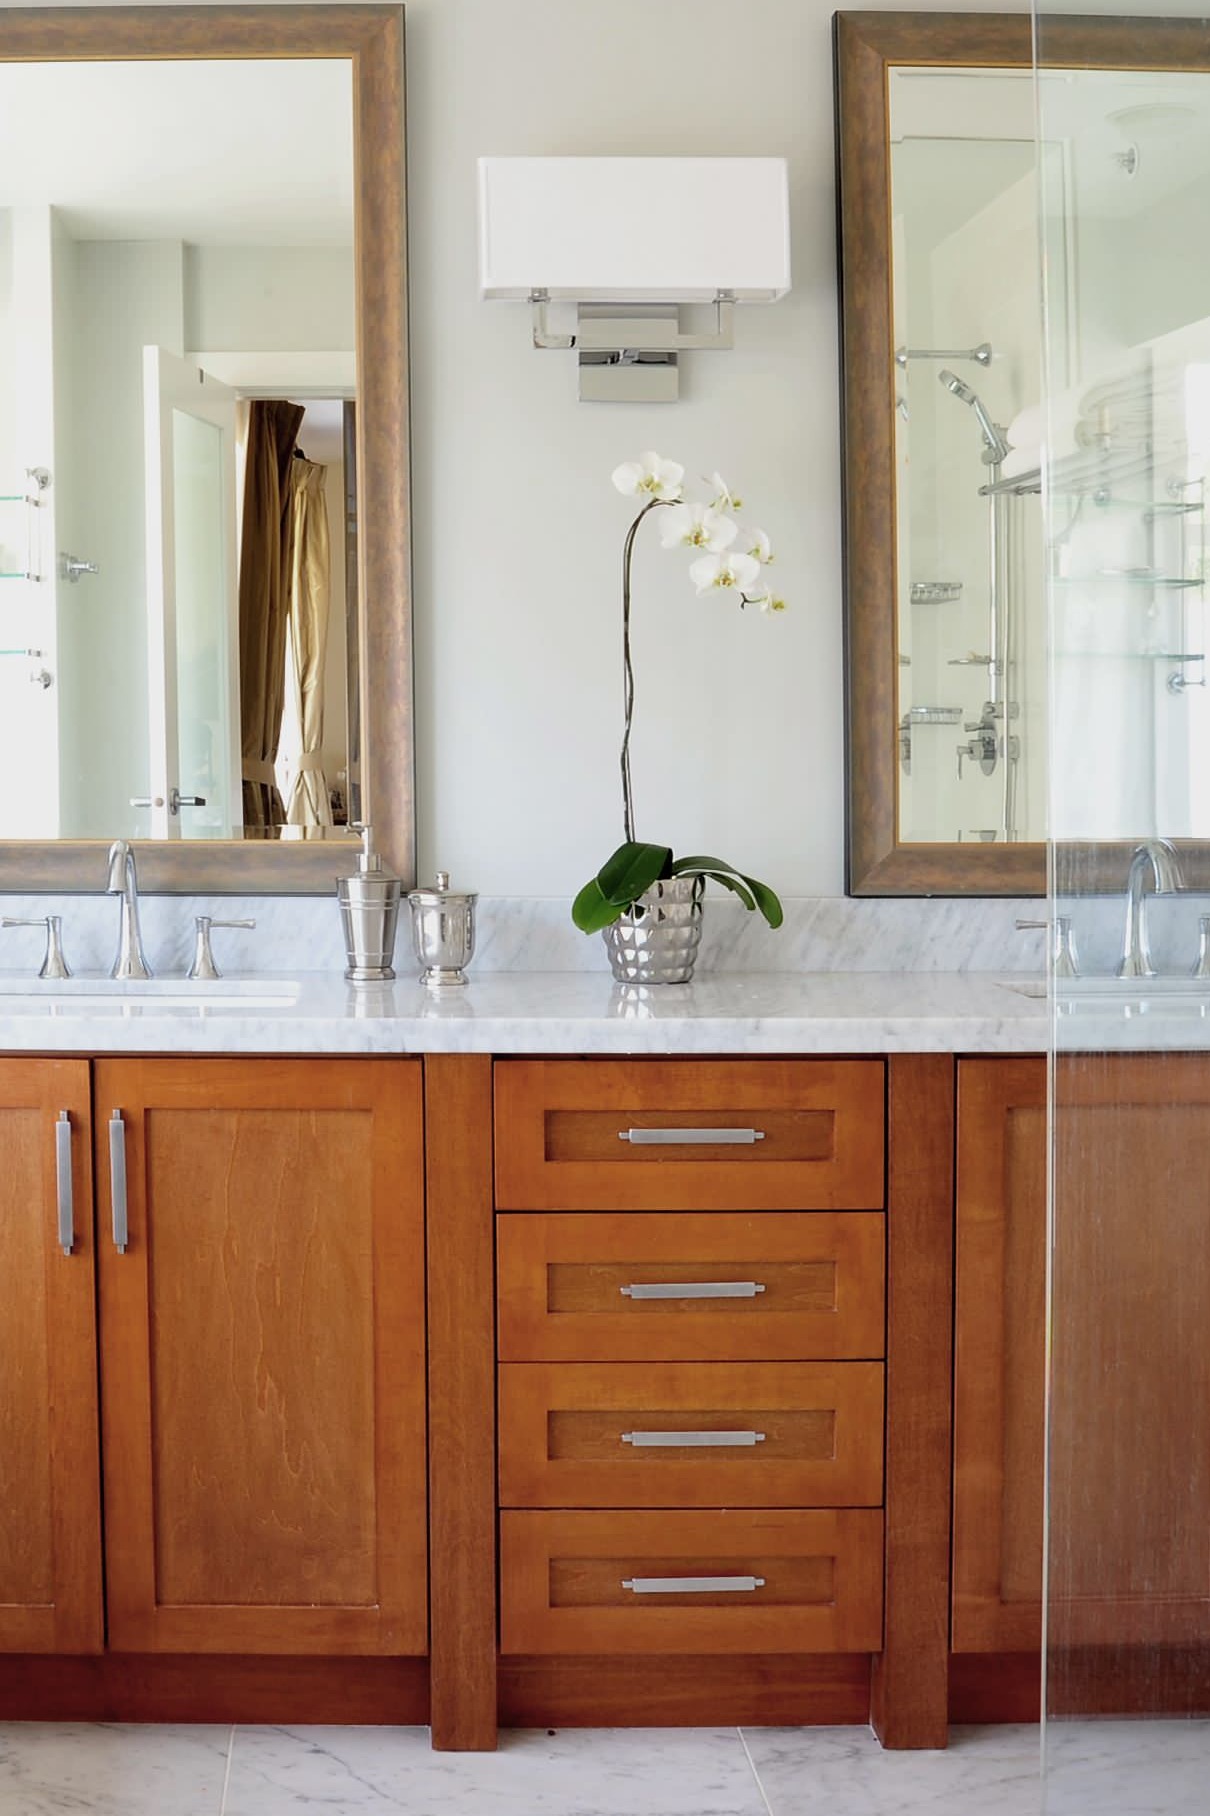 Oak Bathroom Vanity Cabinet